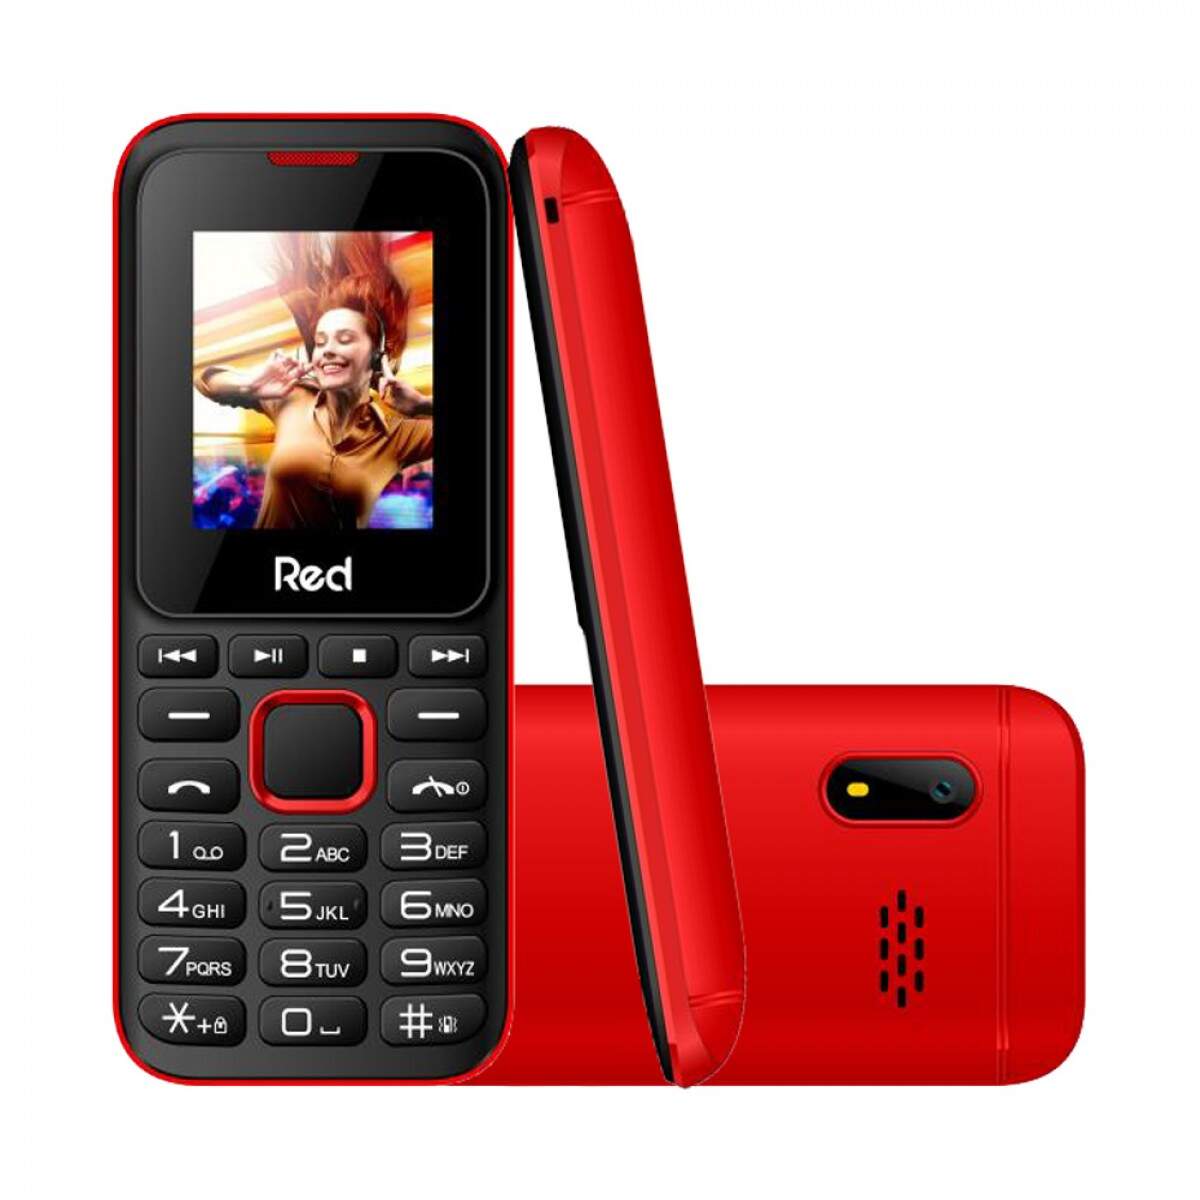 Celular Fit Music II Red Mobile M011G, Tela 1.8, Câmera, FM Wireless,  Vibracall, Memória expansível até 32GB - Preto/Azul